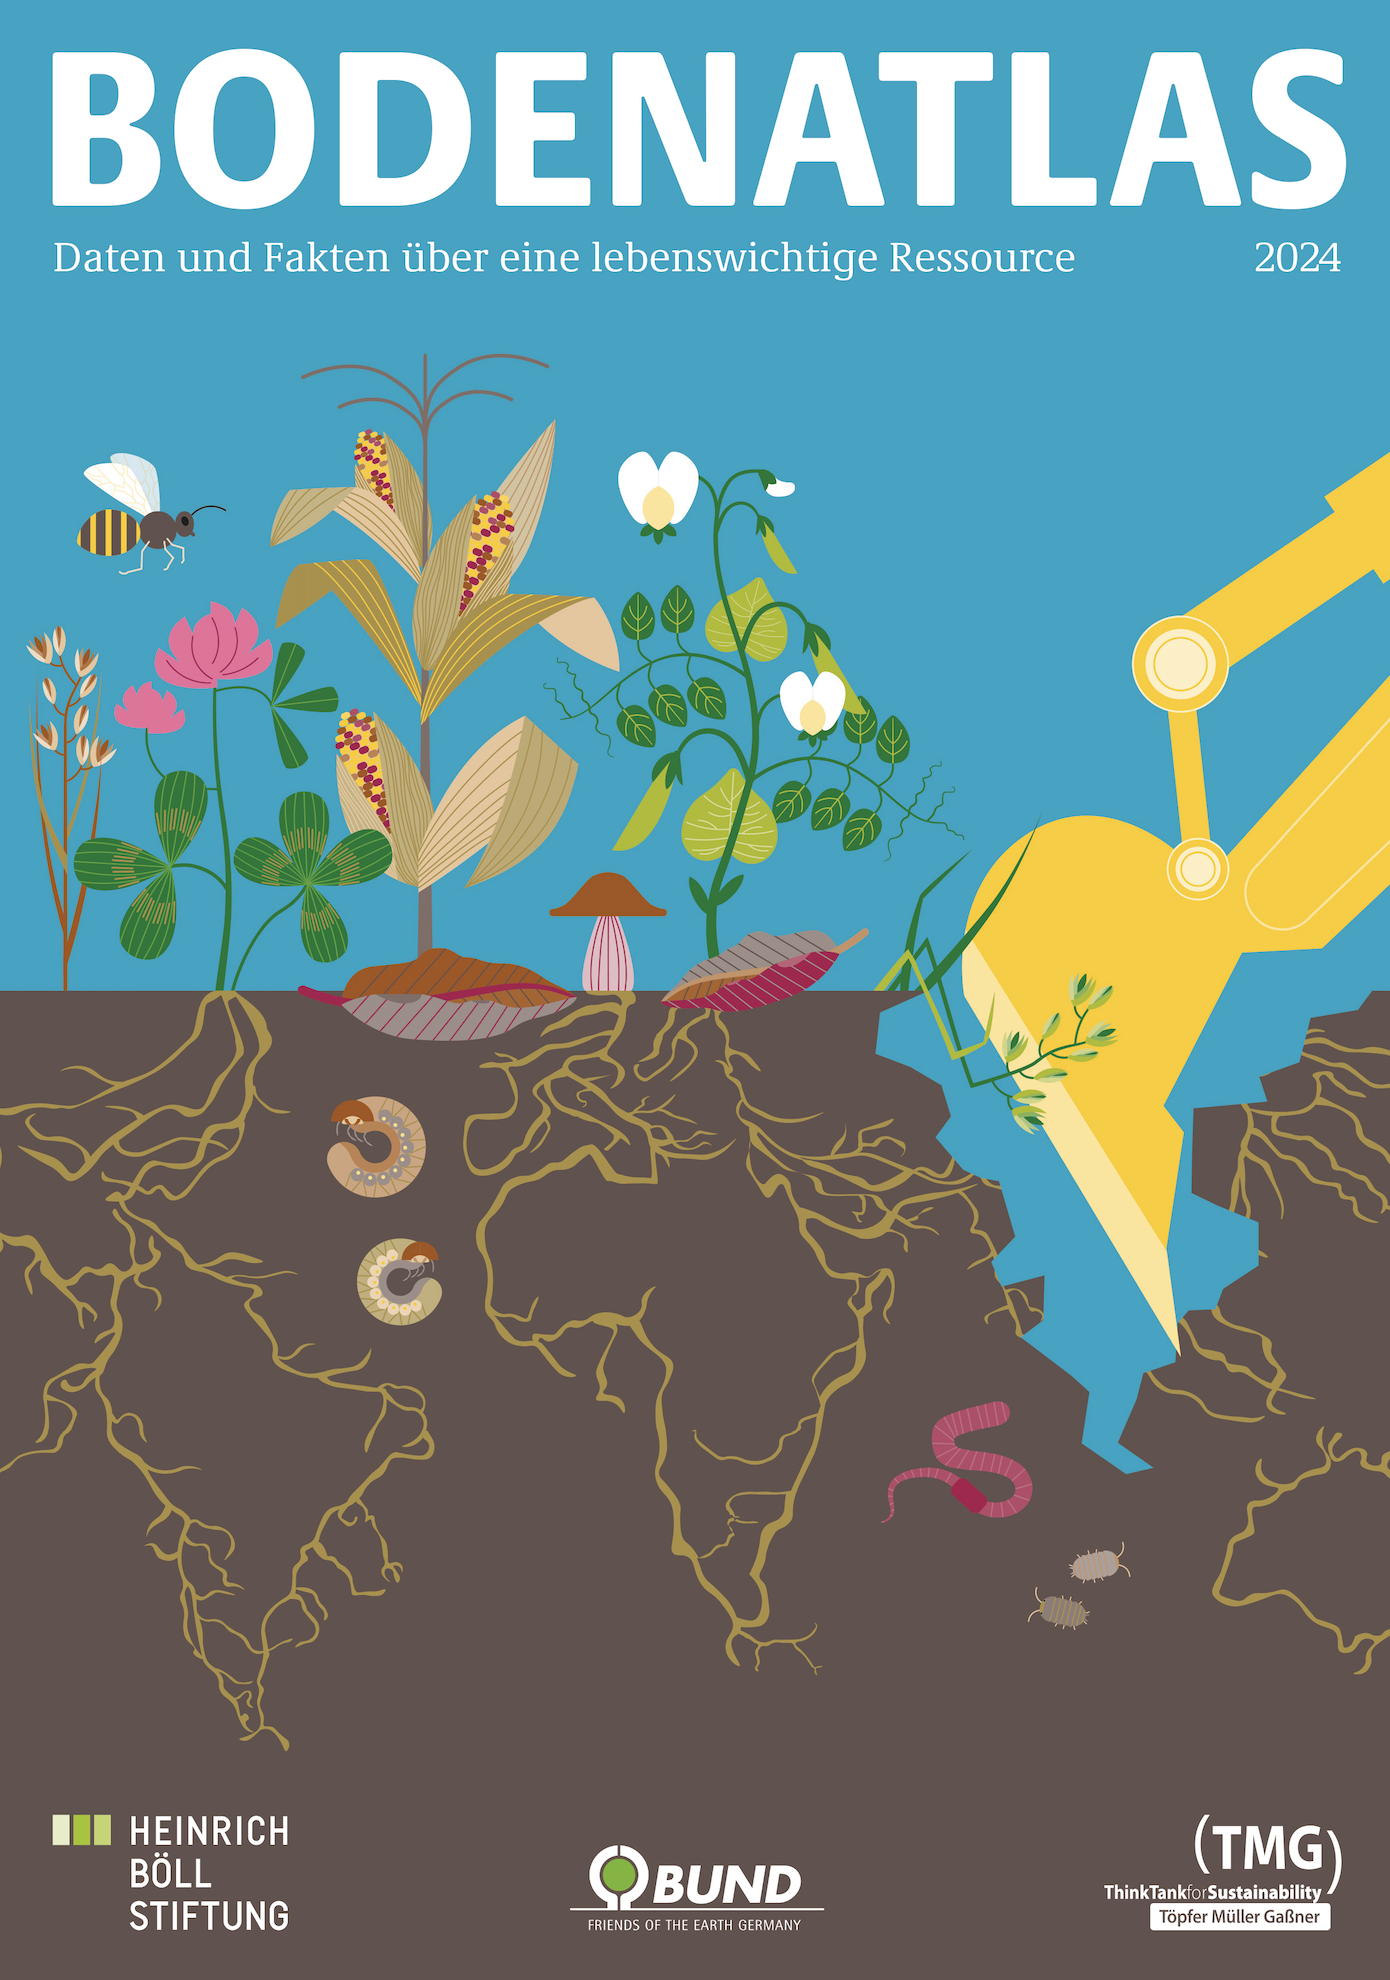 Bodenatlas 2024: Boden schützen – Ernährungssicherheit, Klima- und Naturschutz zusammen denken 